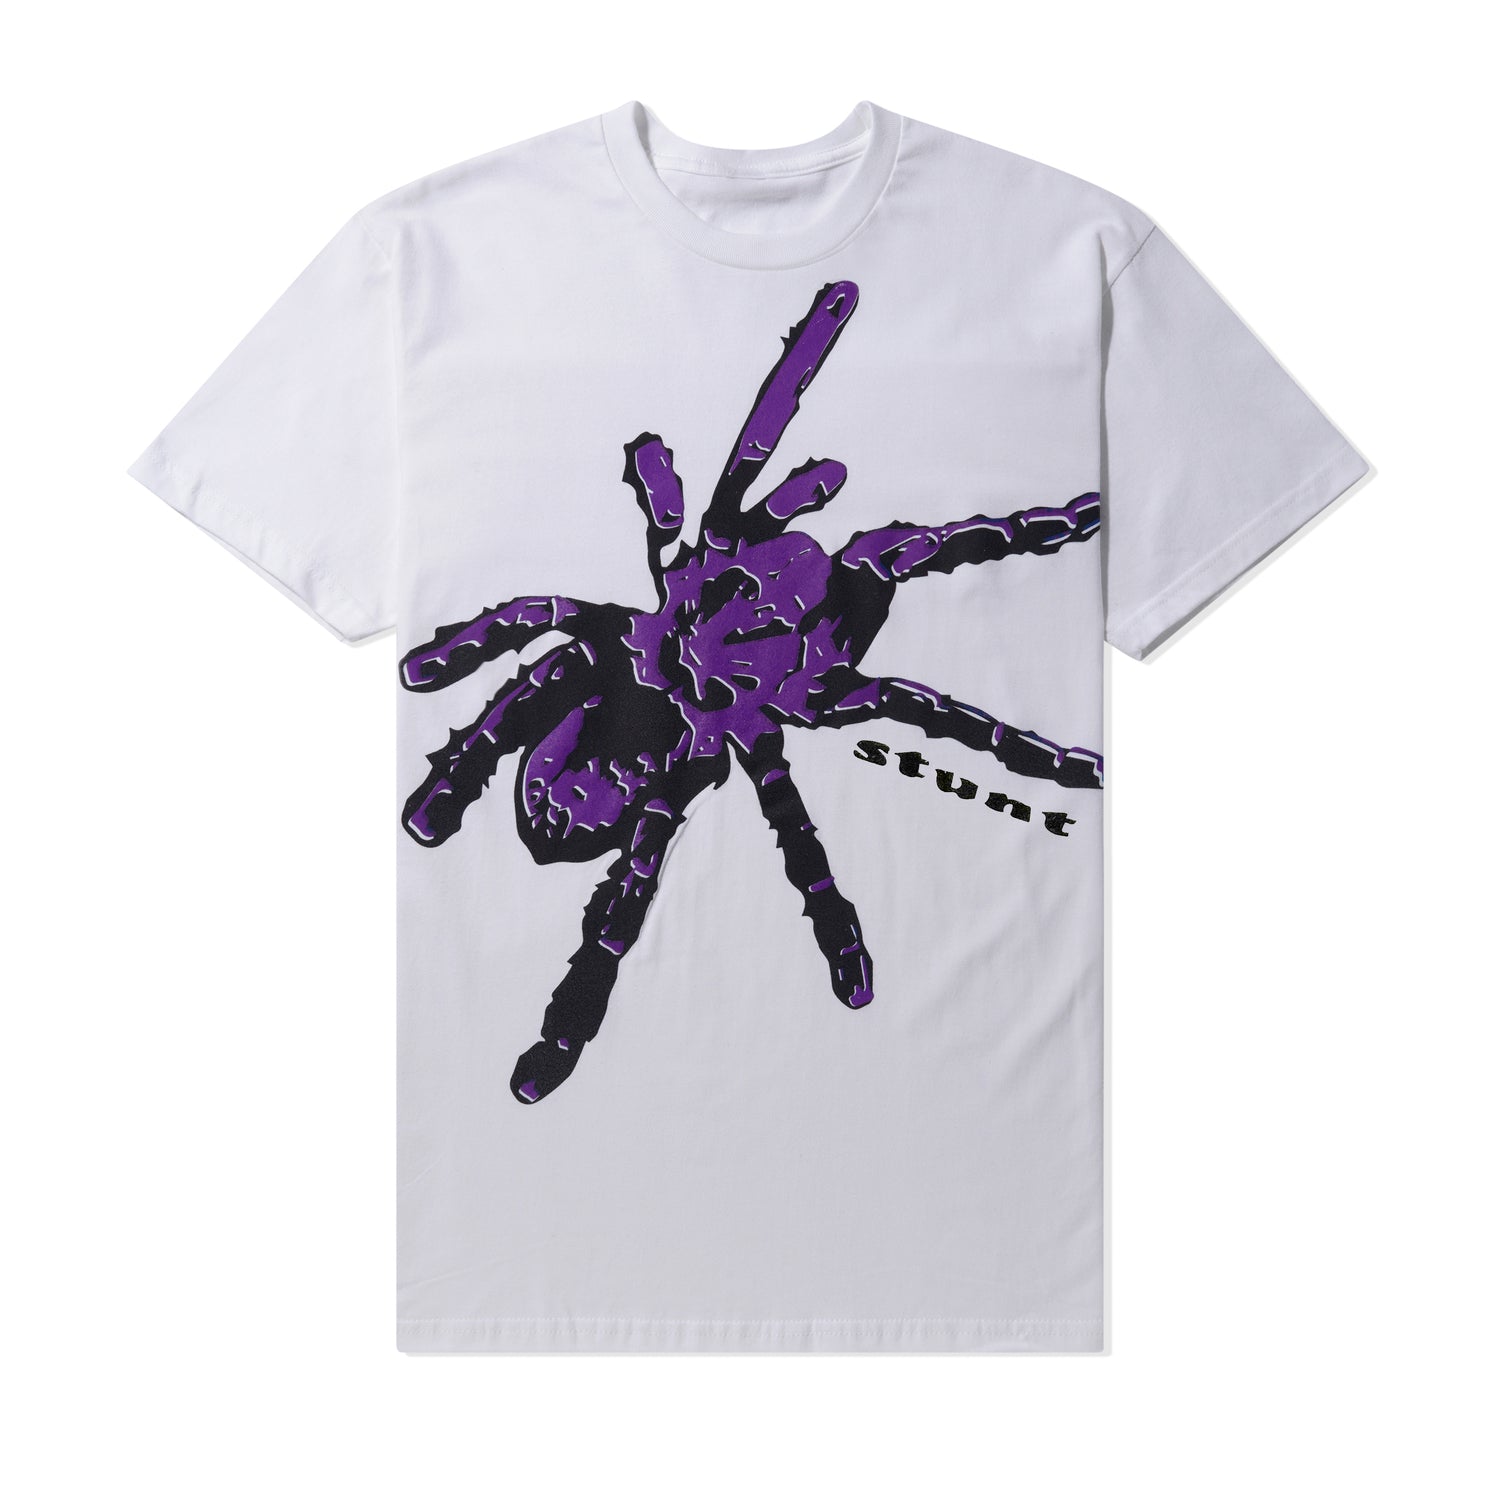 Giant Tarantula Tee, White / Purple